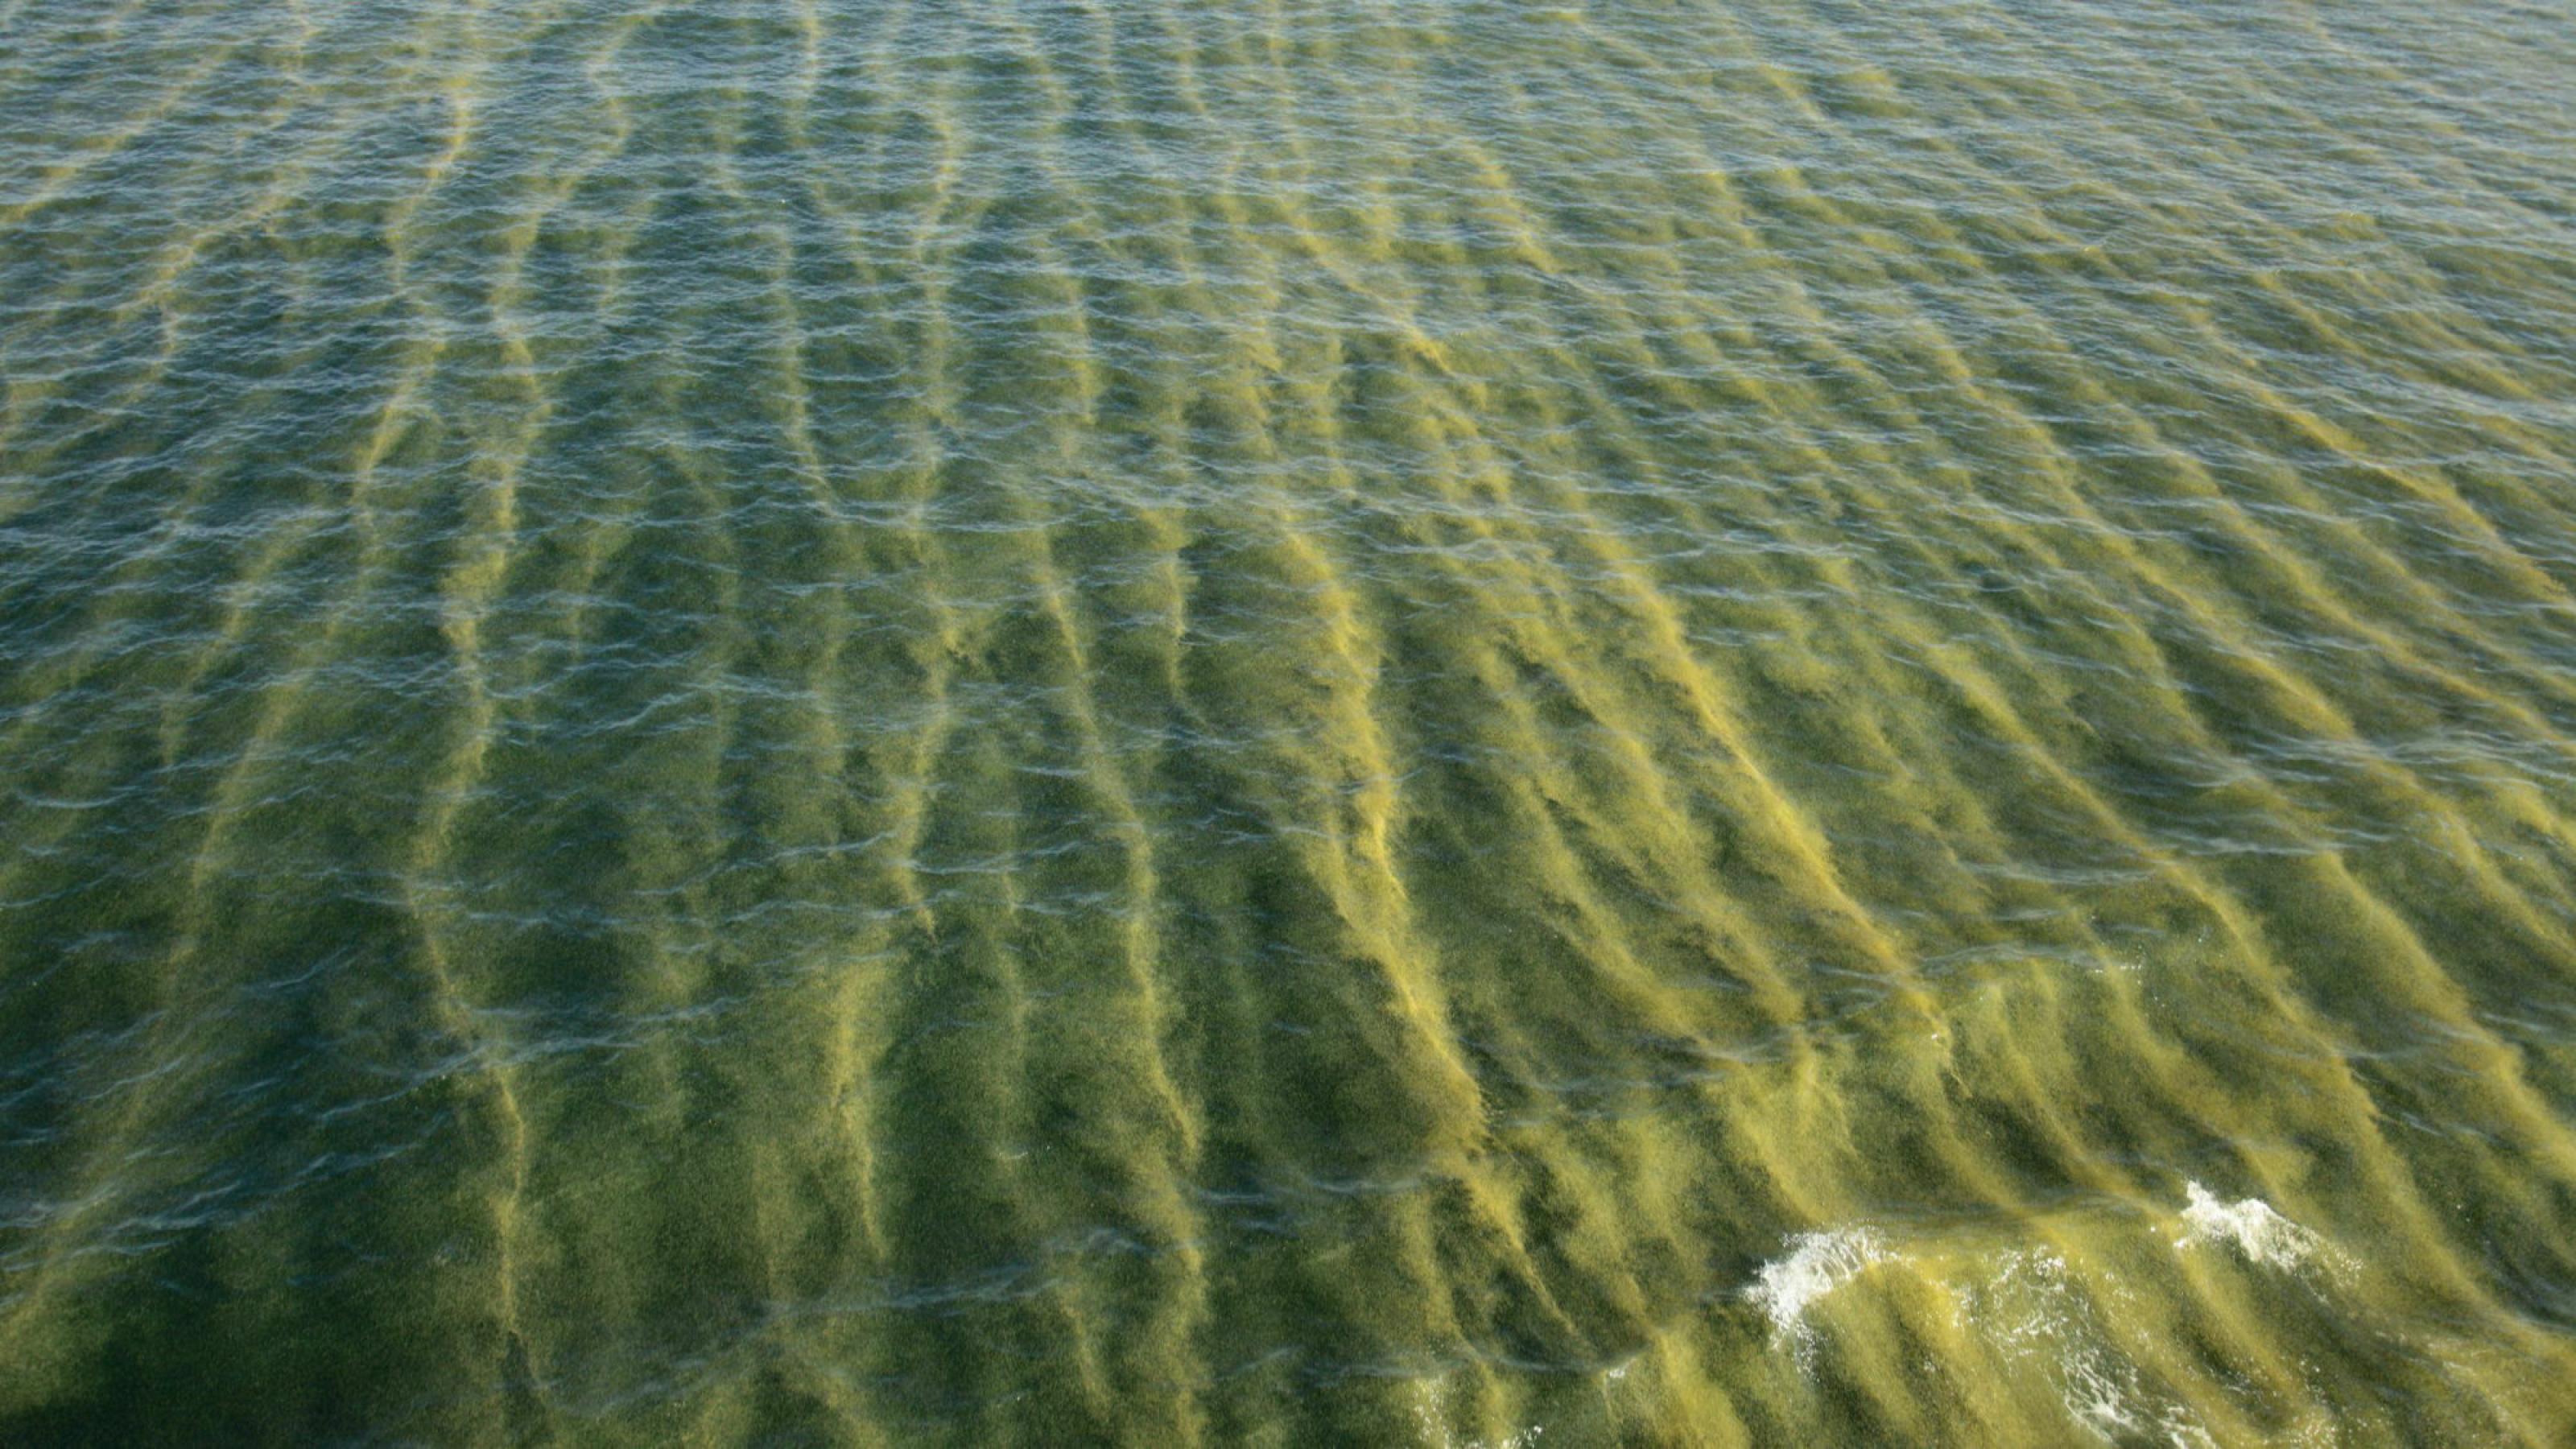 Meeresoberfläche von oben fotografiert: Schwaden von Cyanobakterien färben das Wasser gelblich-grün.